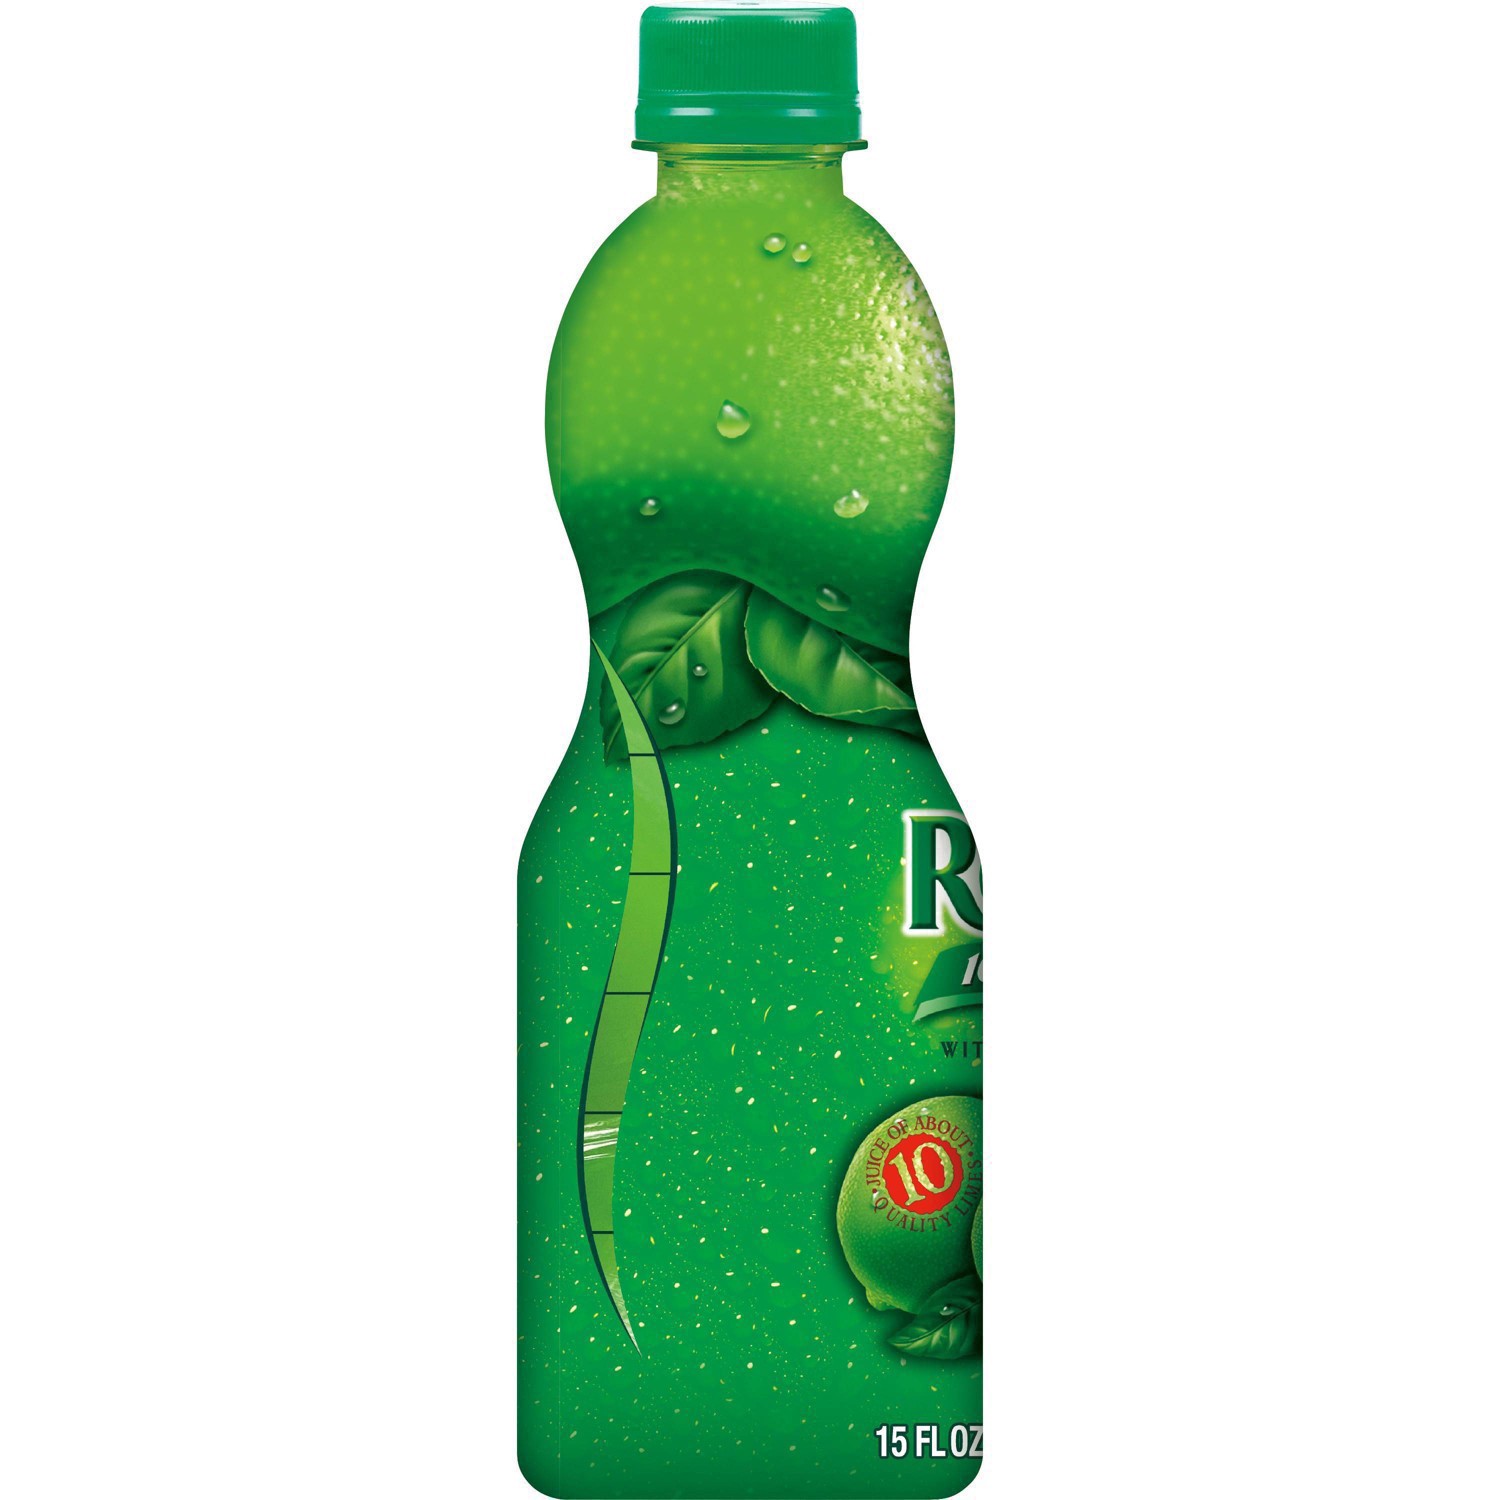 slide 26 of 68, ReaLime 100% Lime Juice Bottle, 15 fl oz